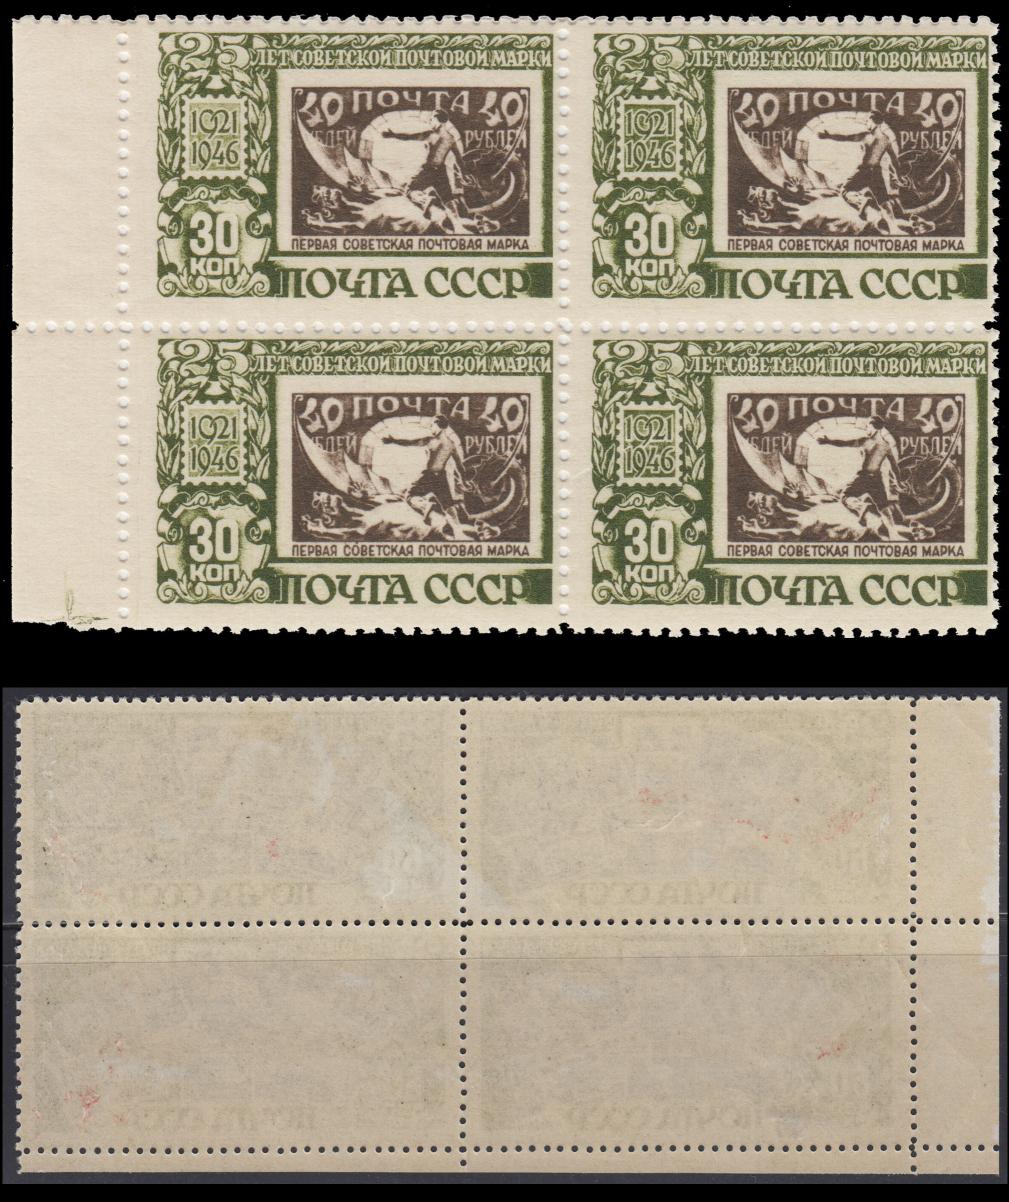 Название марка первого. Советские почтовые марки. Почтовые марки Испании. Кв 1 Почтовая марка.